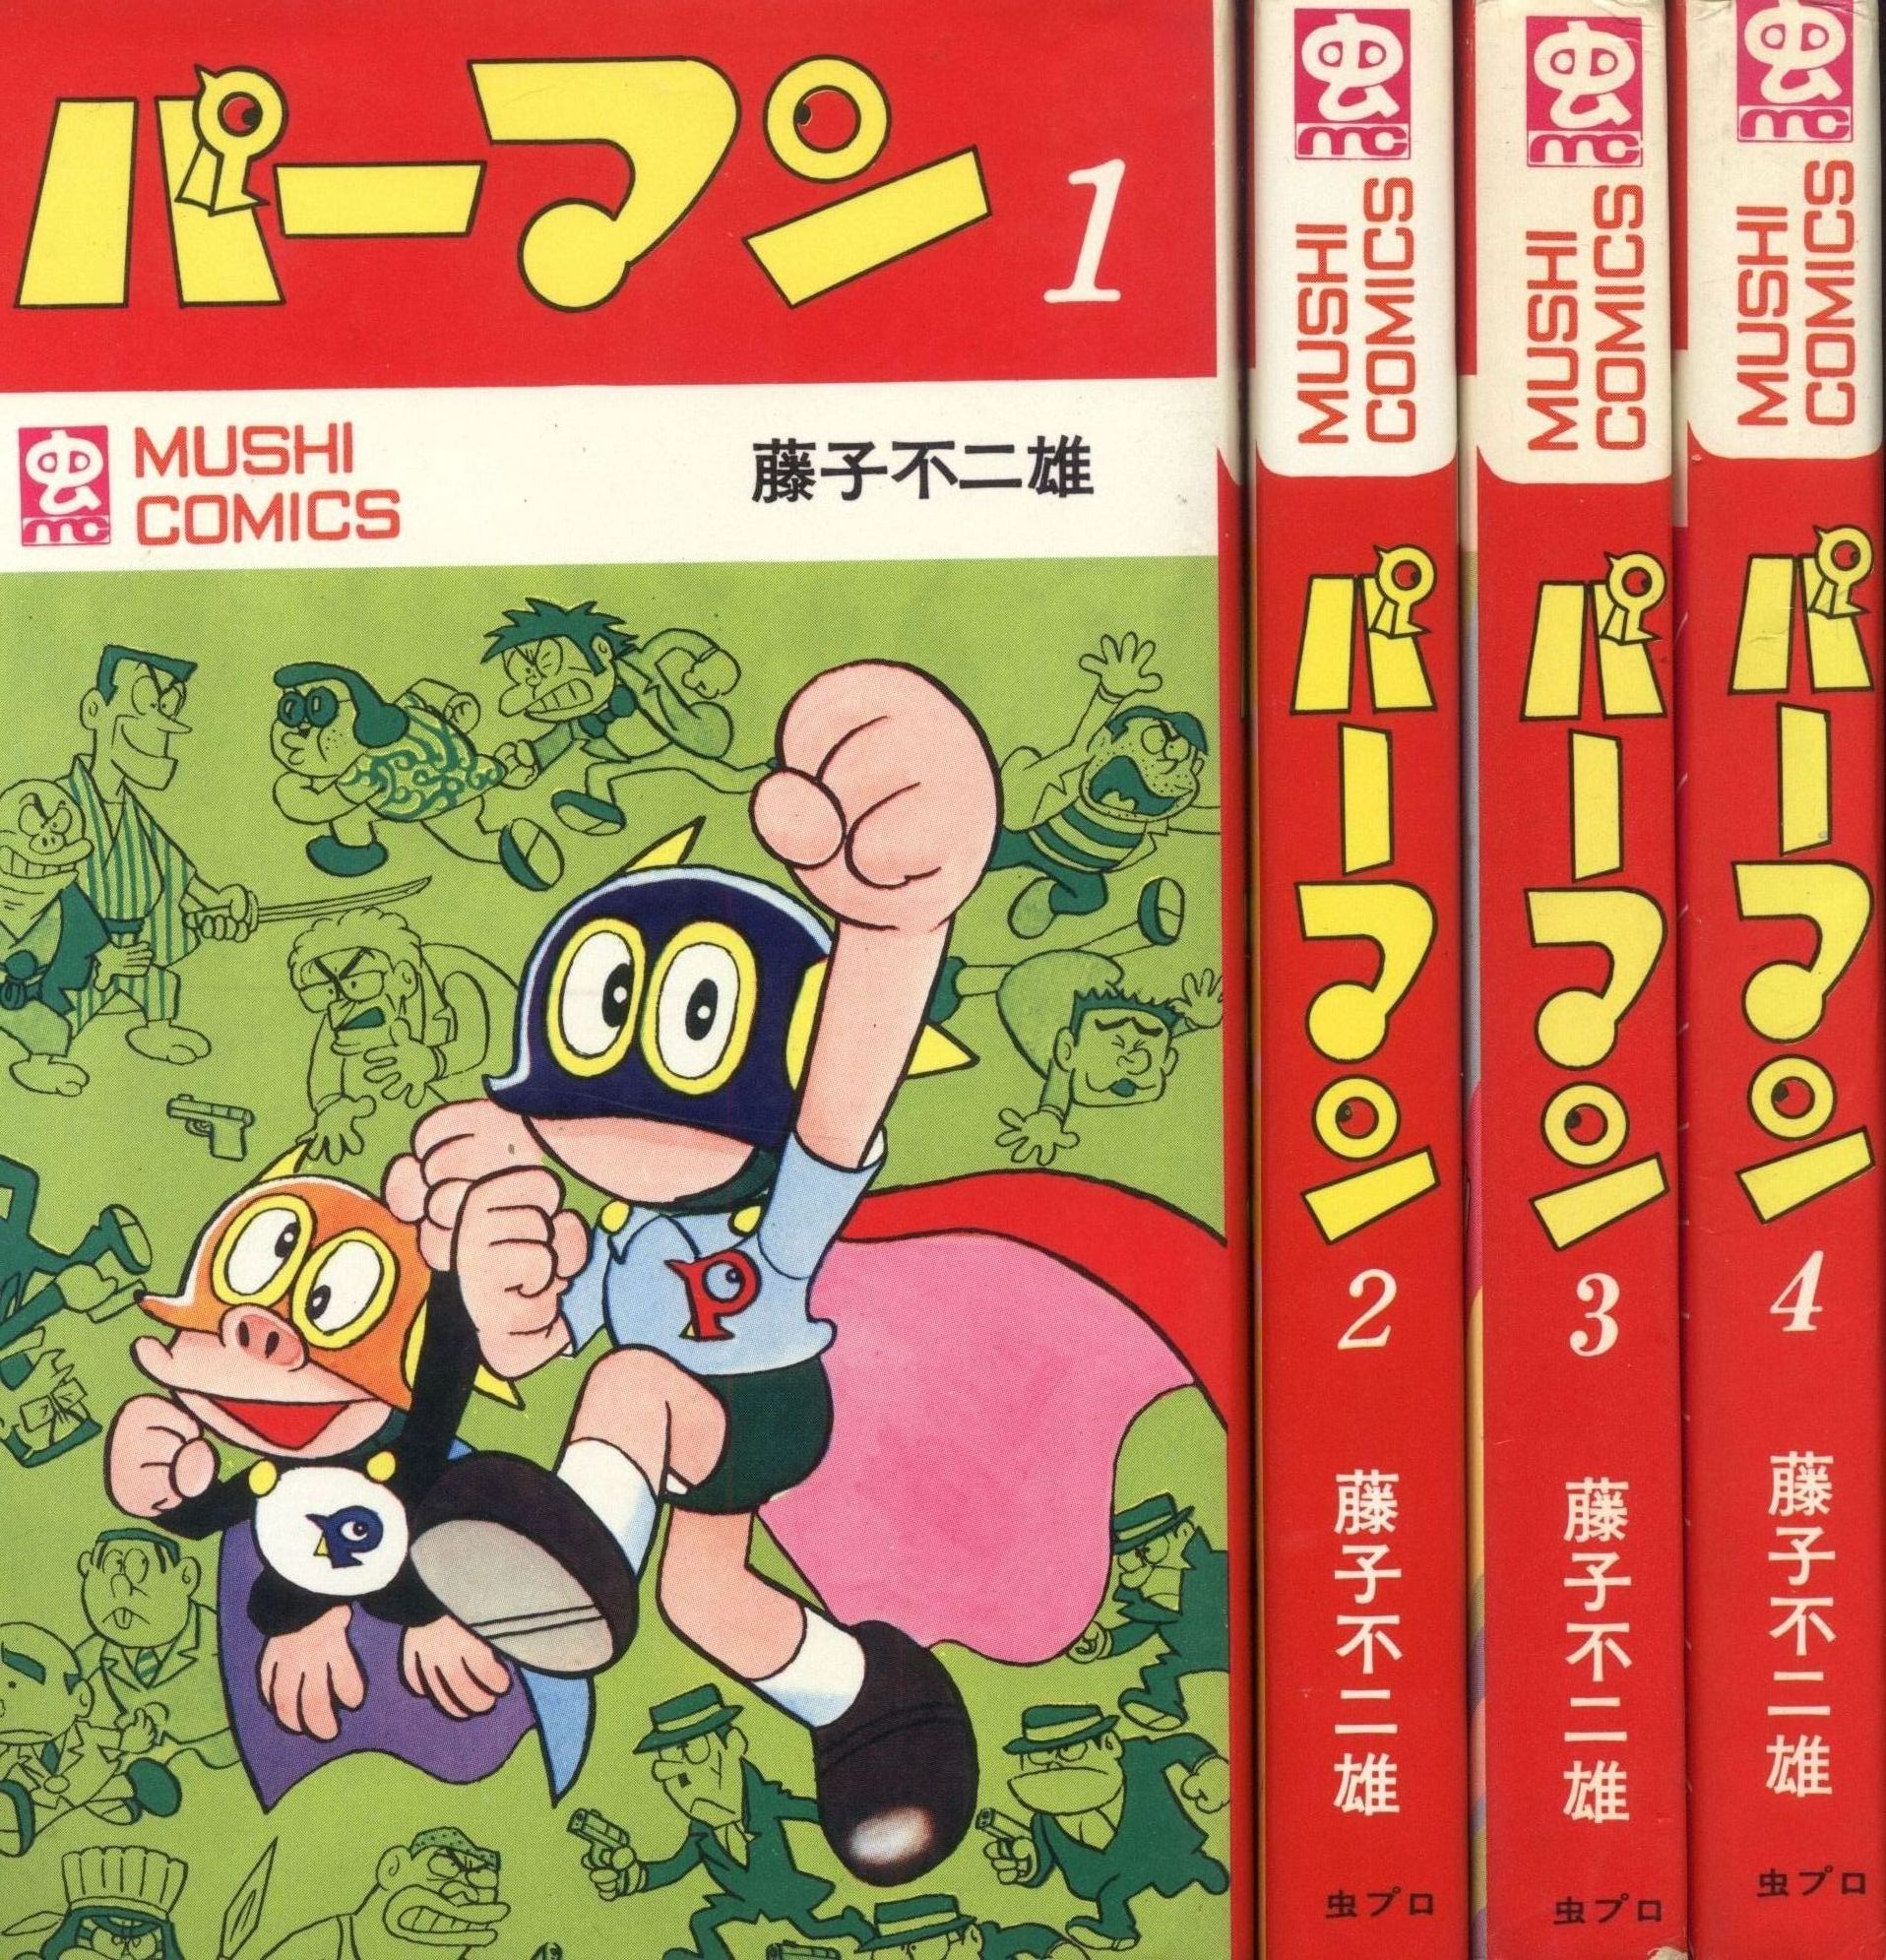 藤子不二雄 パーマン 第１巻 虫コミックス 初版 - 漫画、コミック